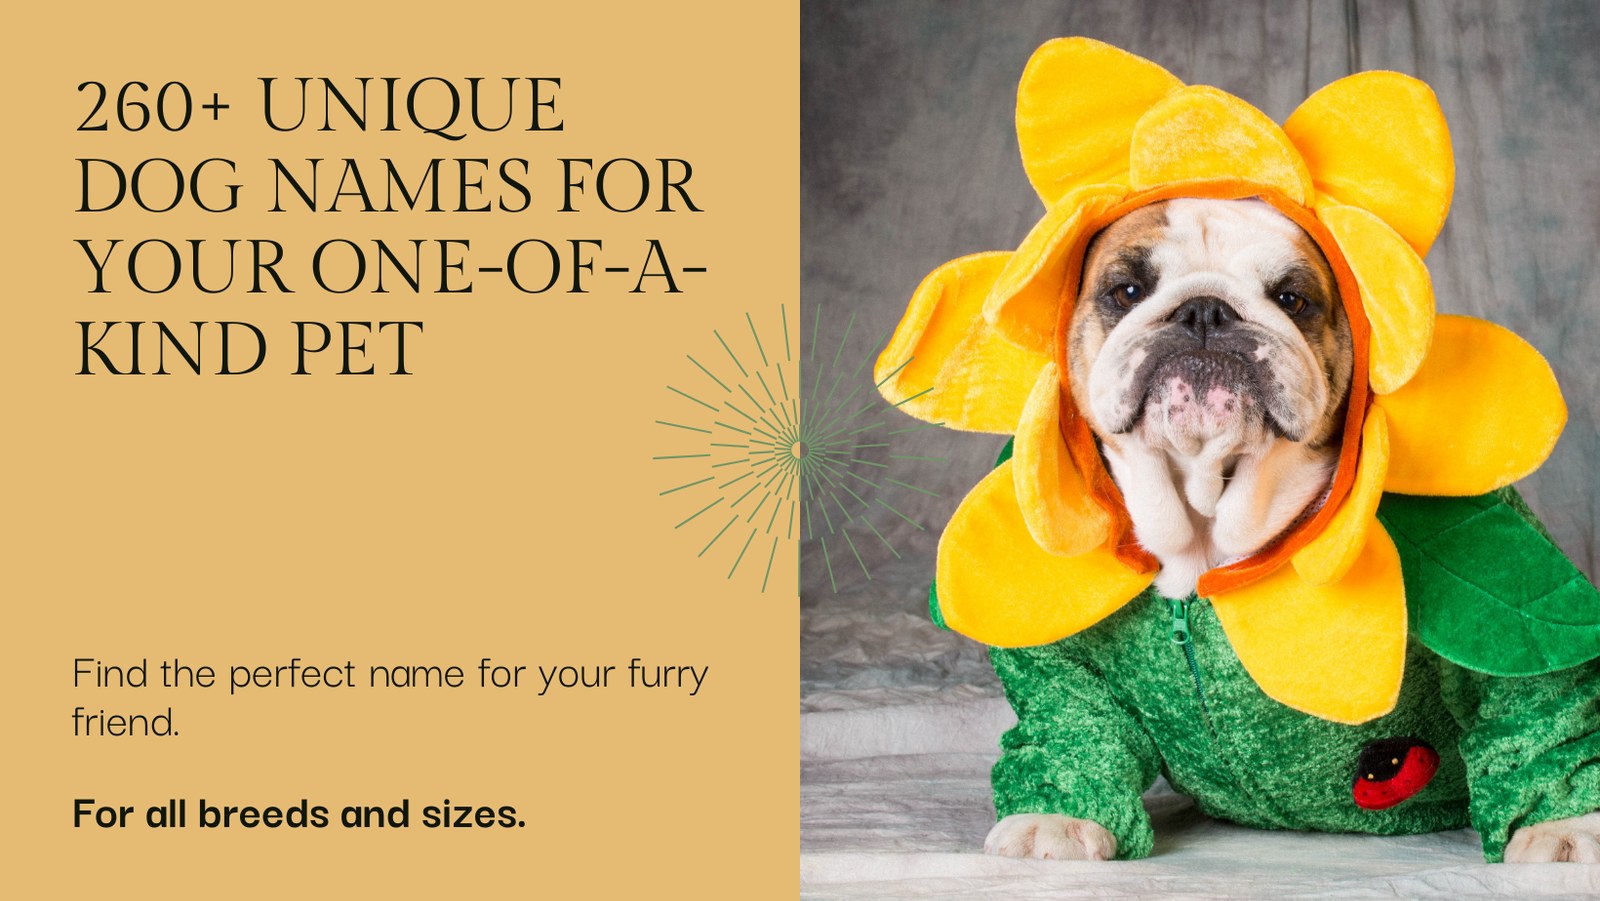 당신의 특별한 애완동물을 위한 260개 이상의 독특한 개 이름